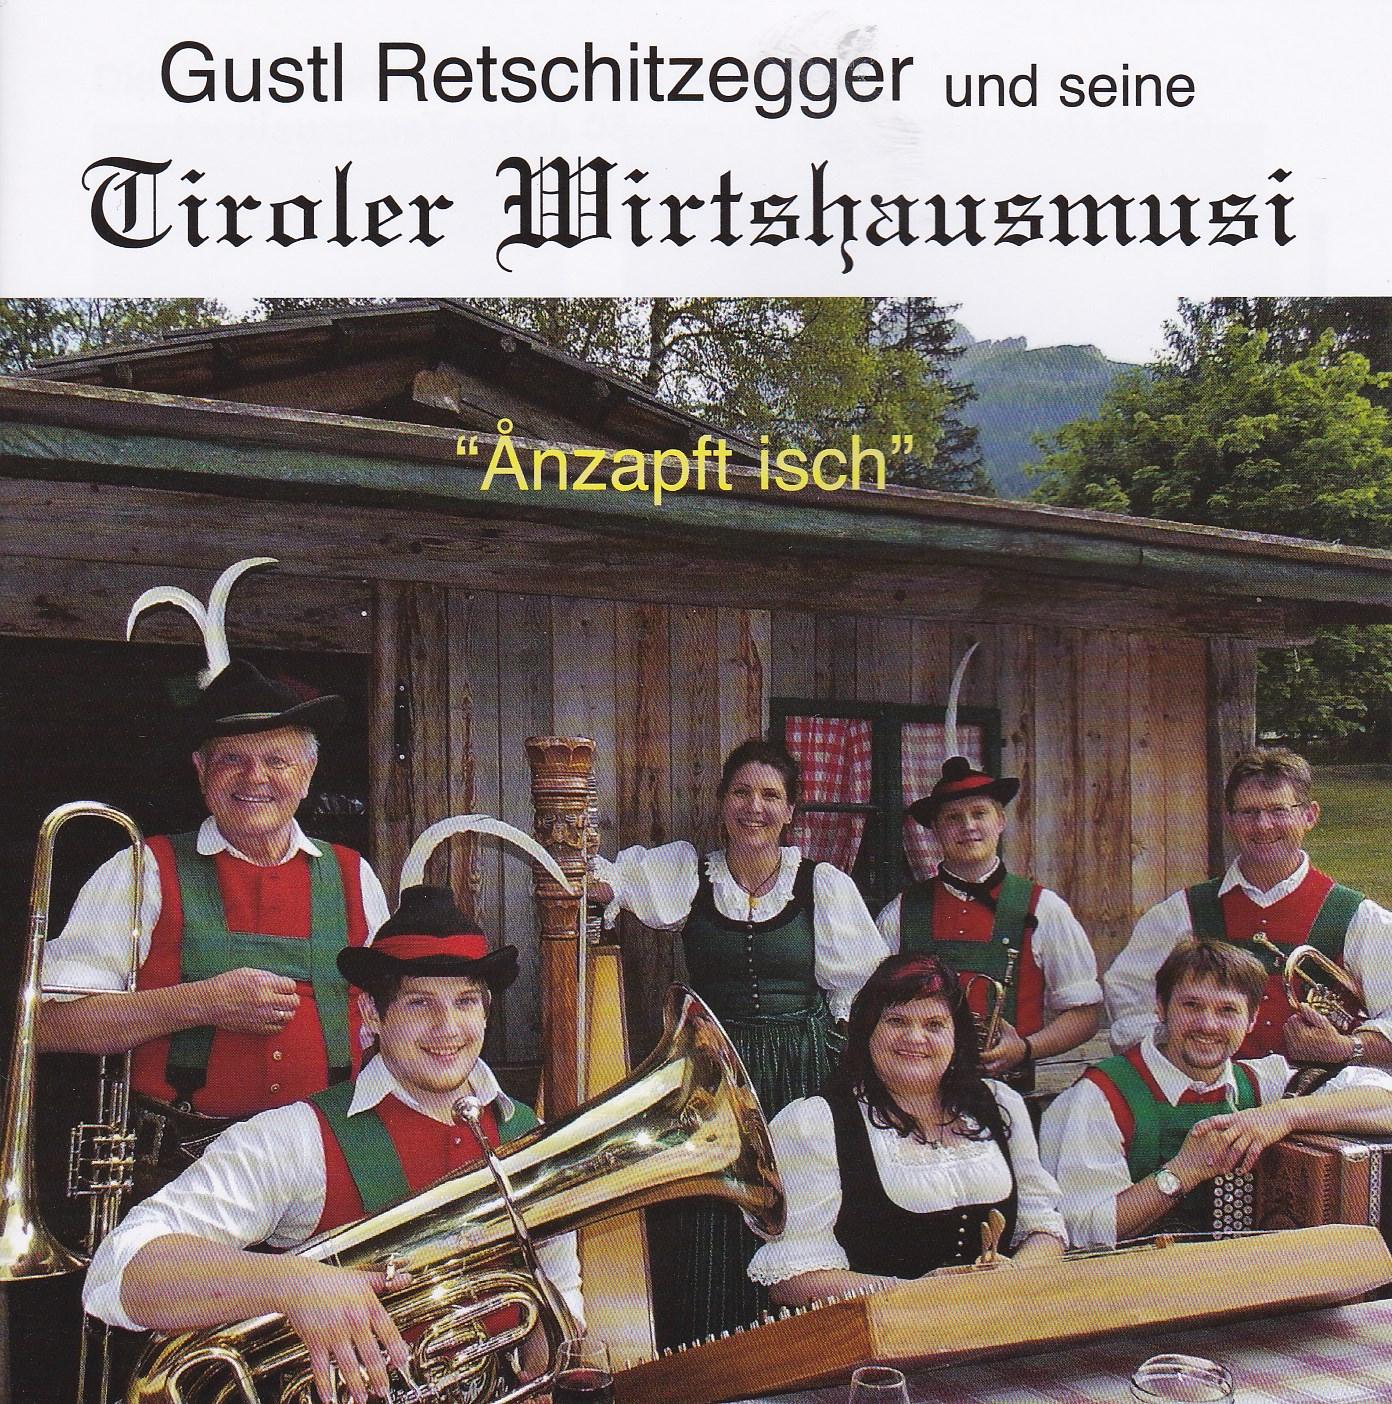 Tiroler Wirtshausmusi - "Anzapft isch"